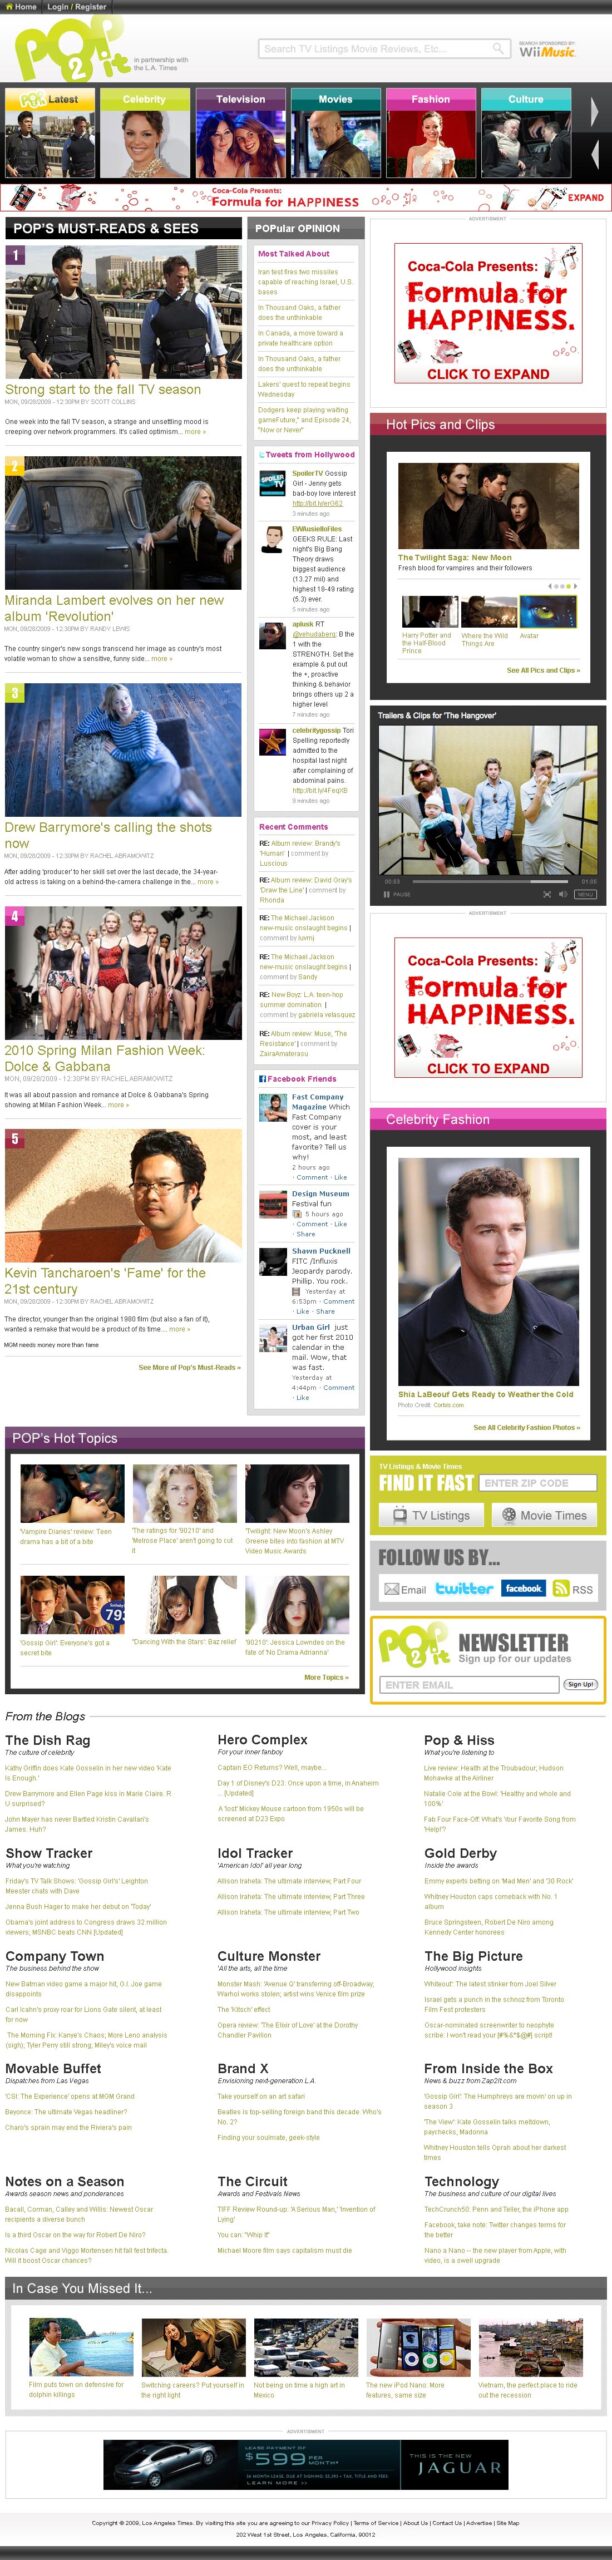 LA Times - Pop2it Homepage